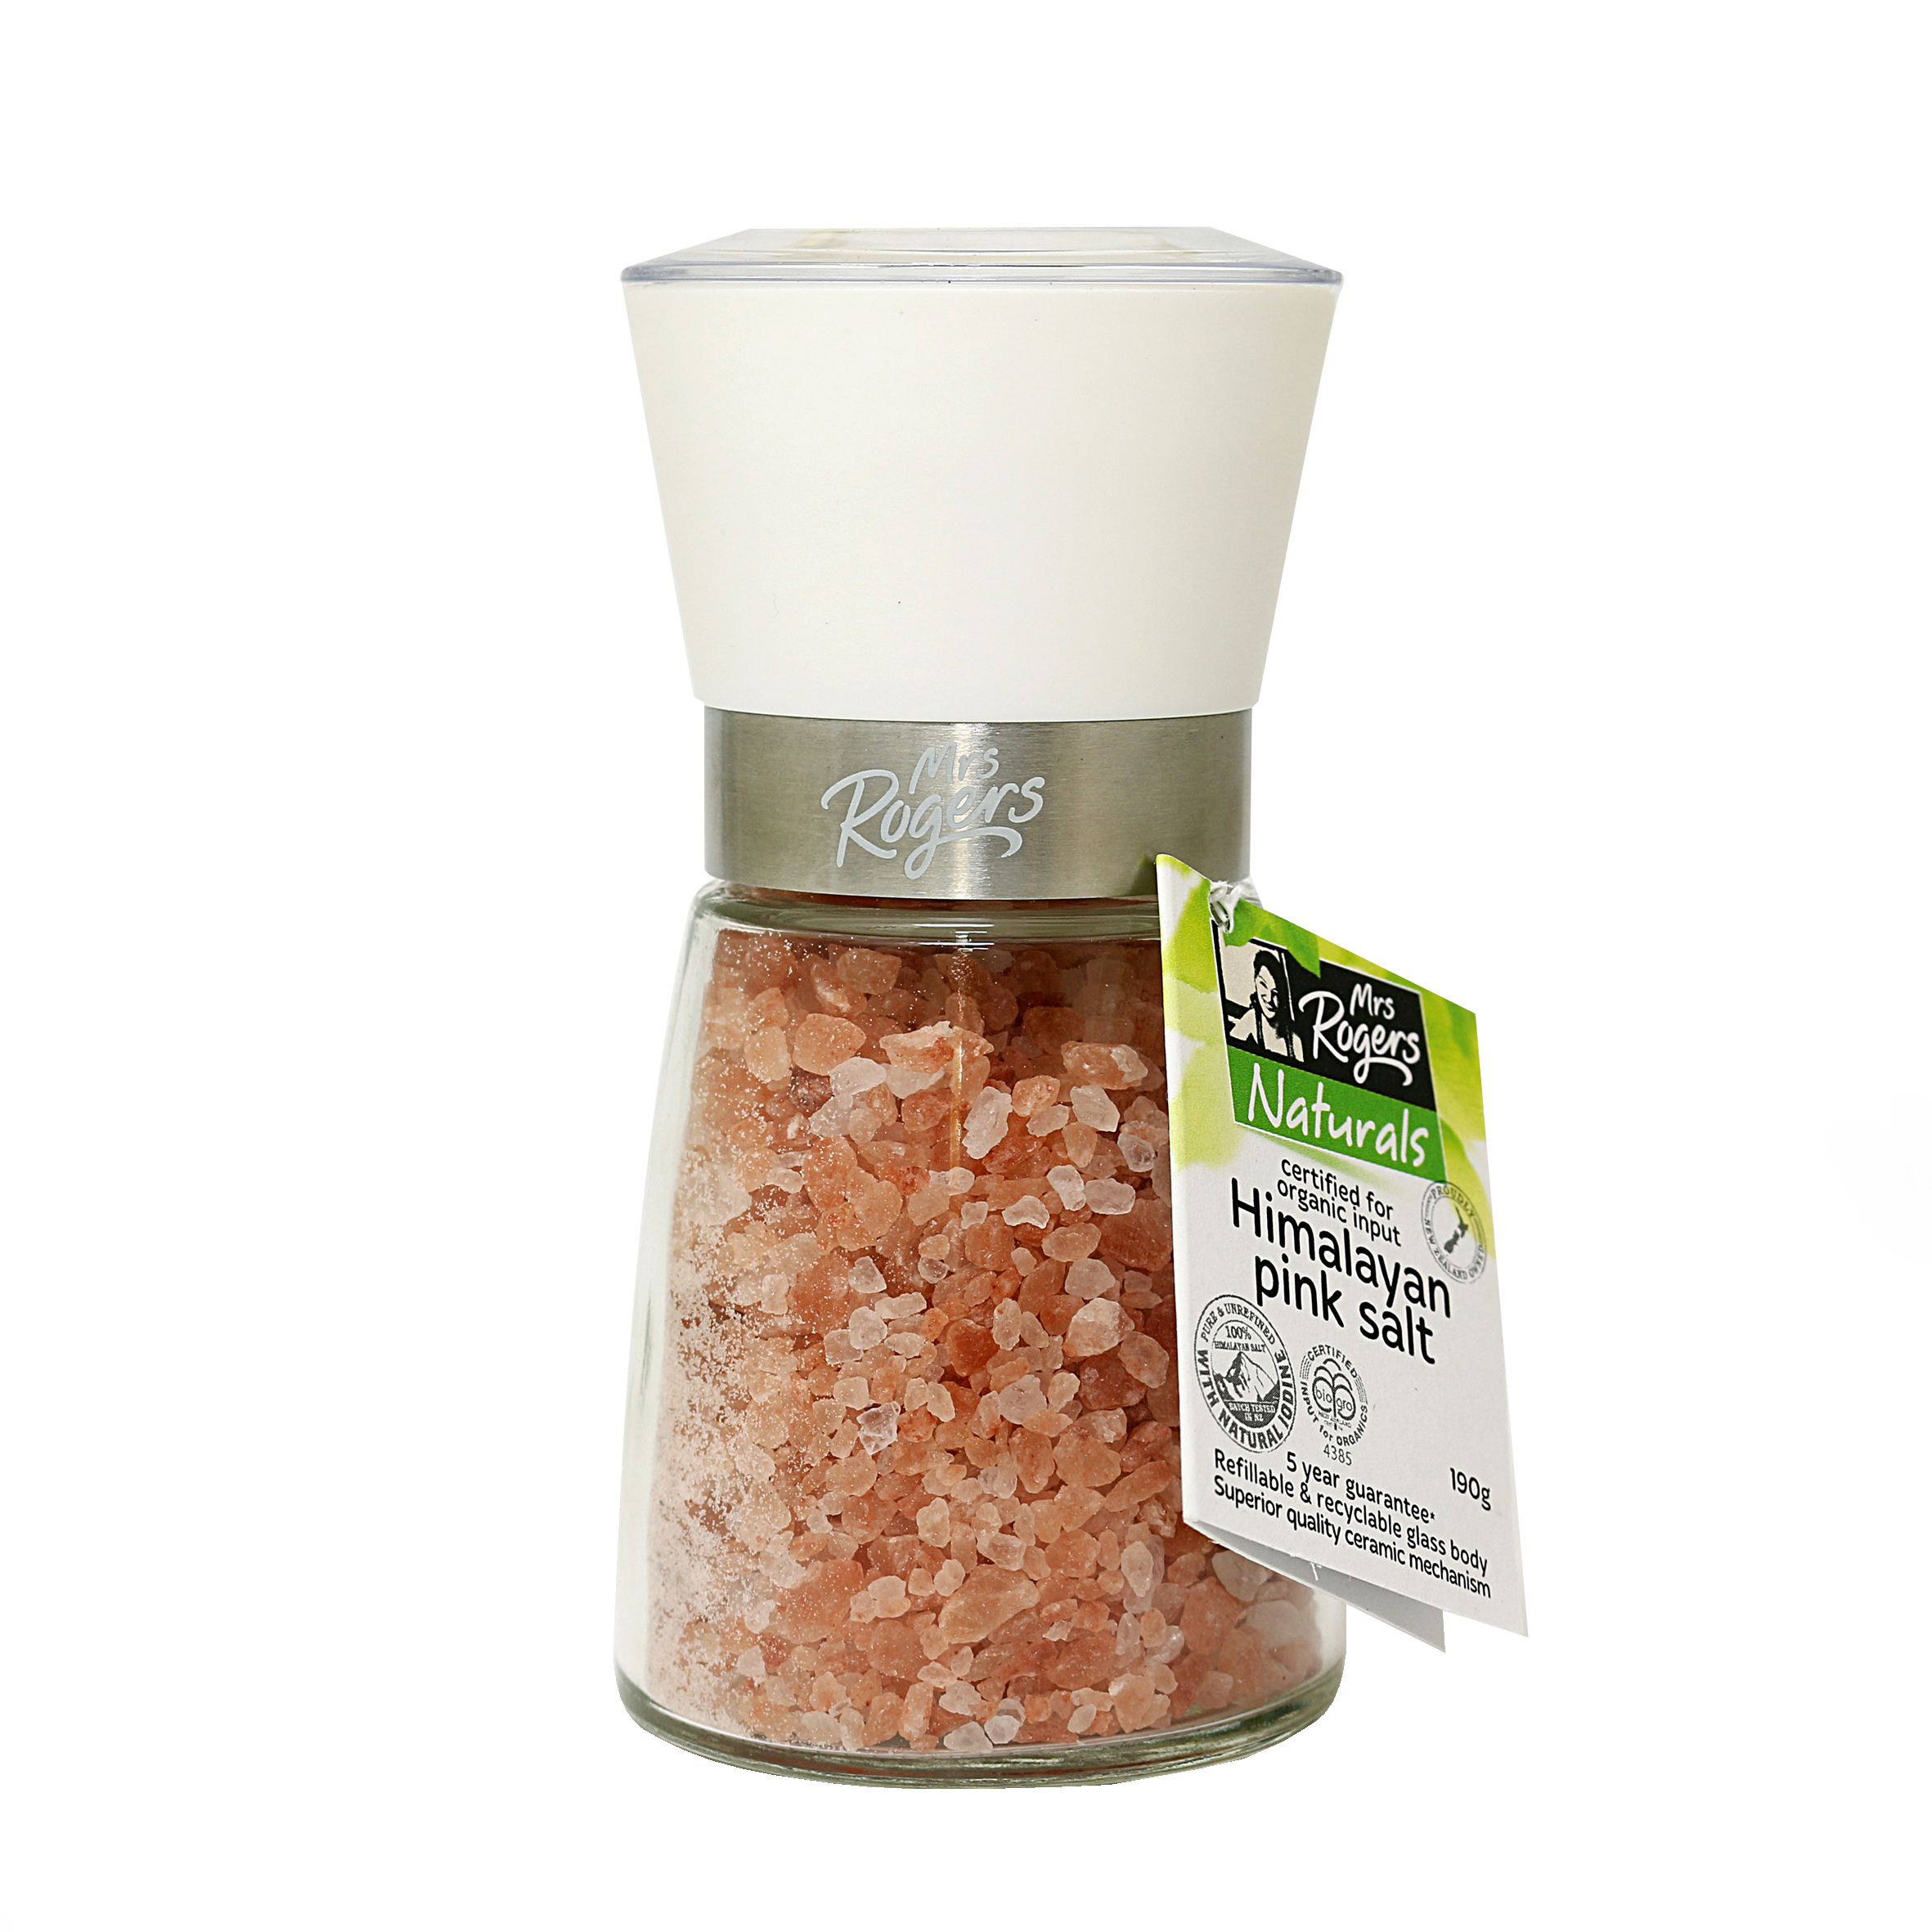 【超市采购】喜马拉雅粉红盐(研磨瓶) 200g(疫情期间超市发货较慢，急单不接)